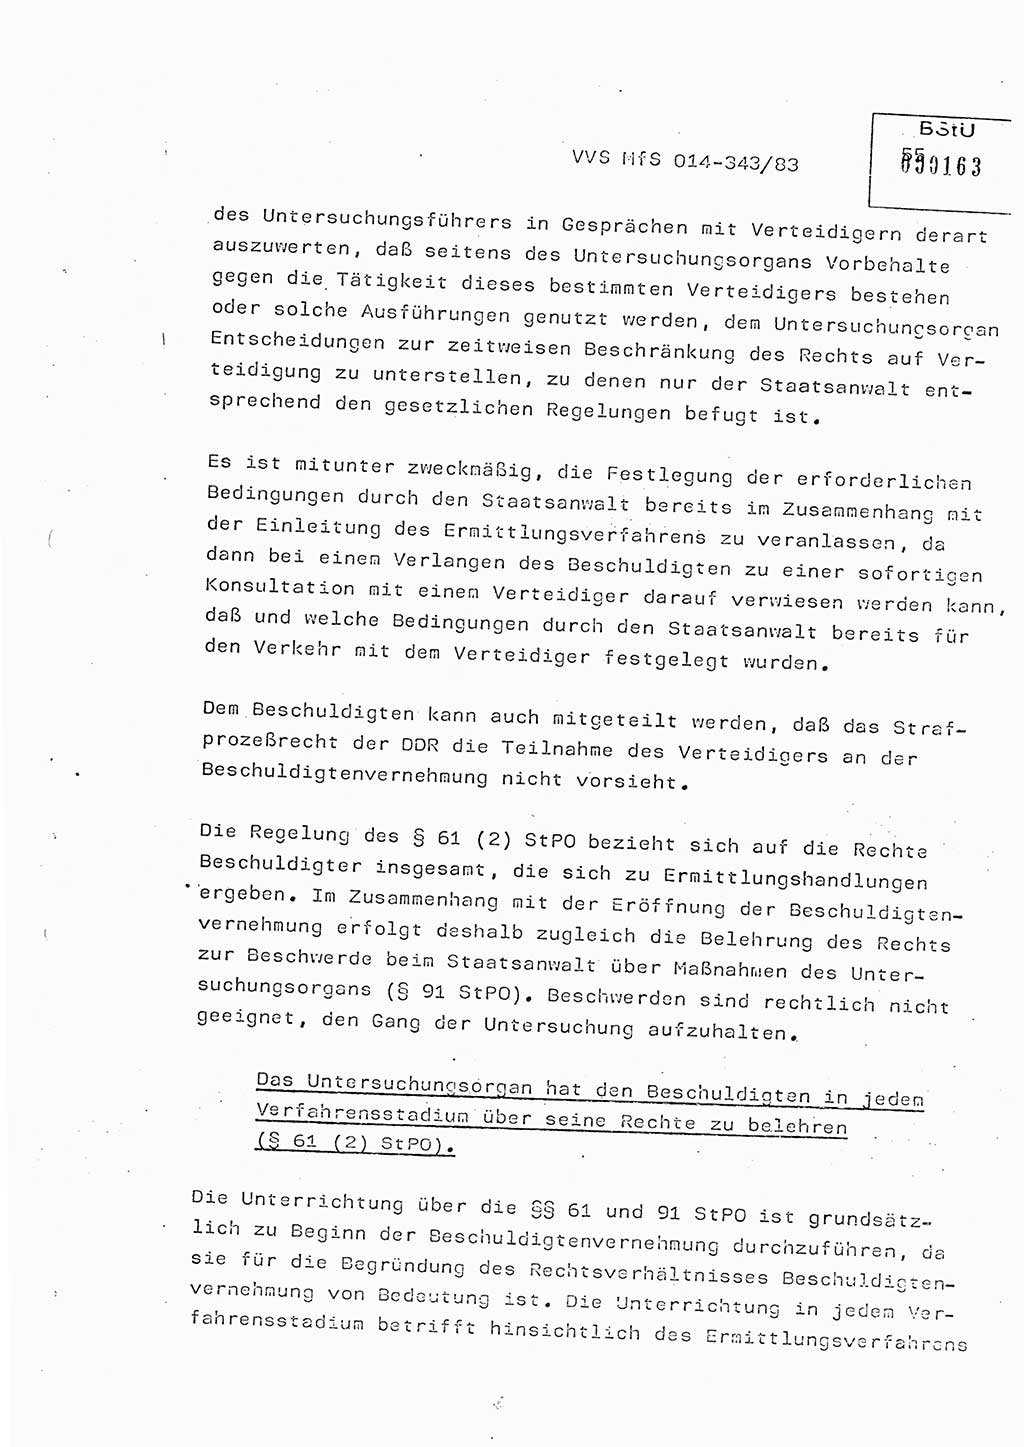 Lektion Ministerium für Staatssicherheit (MfS) [Deutsche Demokratische Republik (DDR)], Hauptabteilung (HA) Ⅸ, Vertrauliche Verschlußsache (VVS) o014-343/83, Berlin 1983, Seite 55 (Lekt. MfS DDR HA Ⅸ VVS o014-343/83 1983, S. 55)